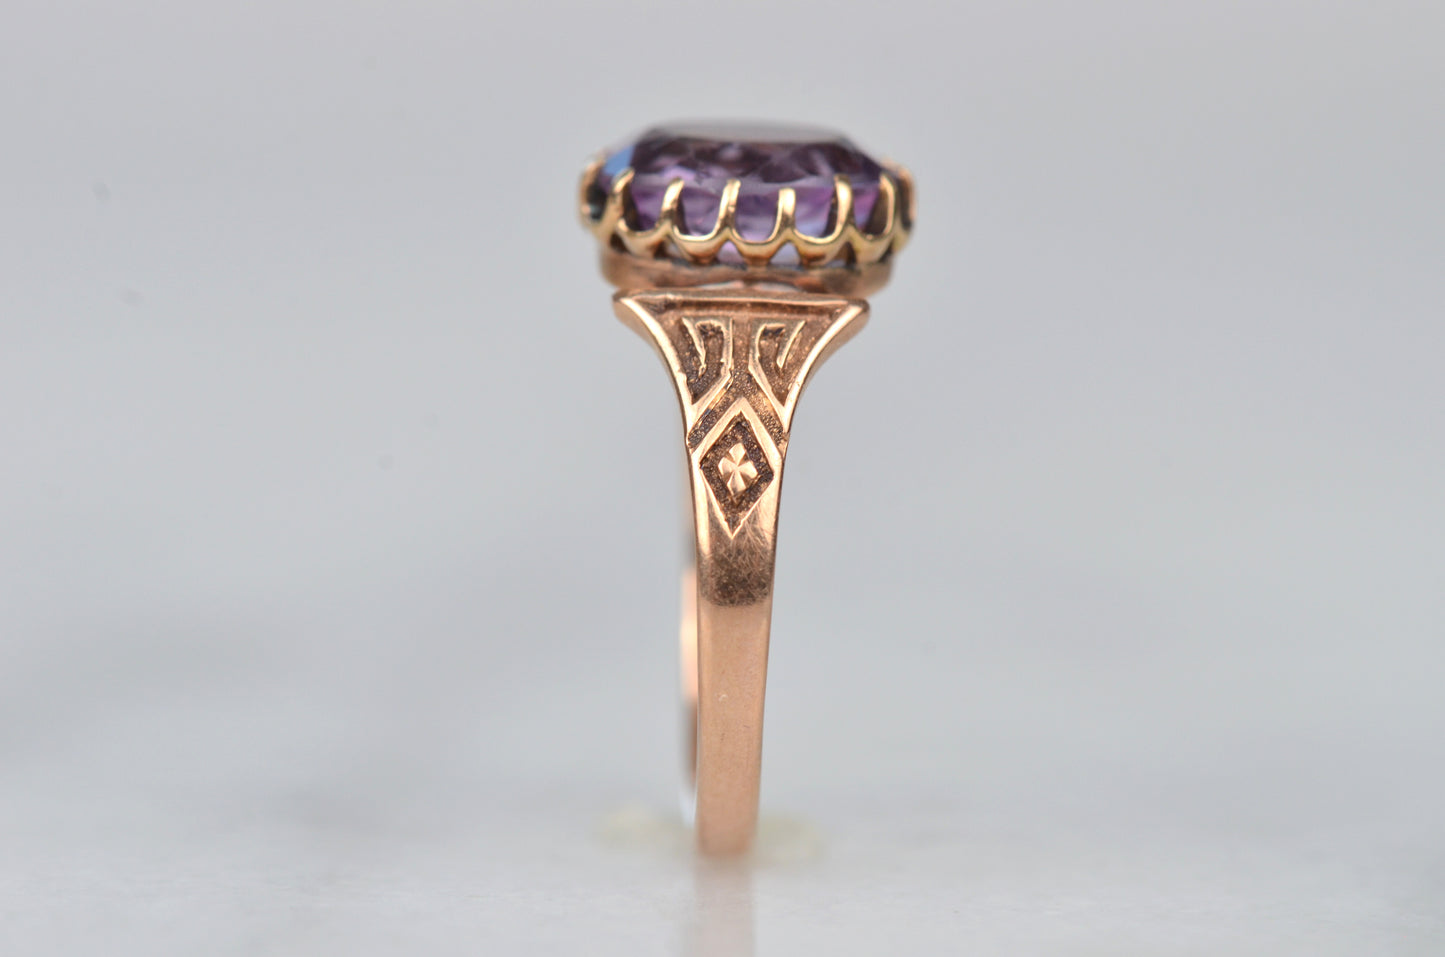 Alluring Victorian Amethyst Ring